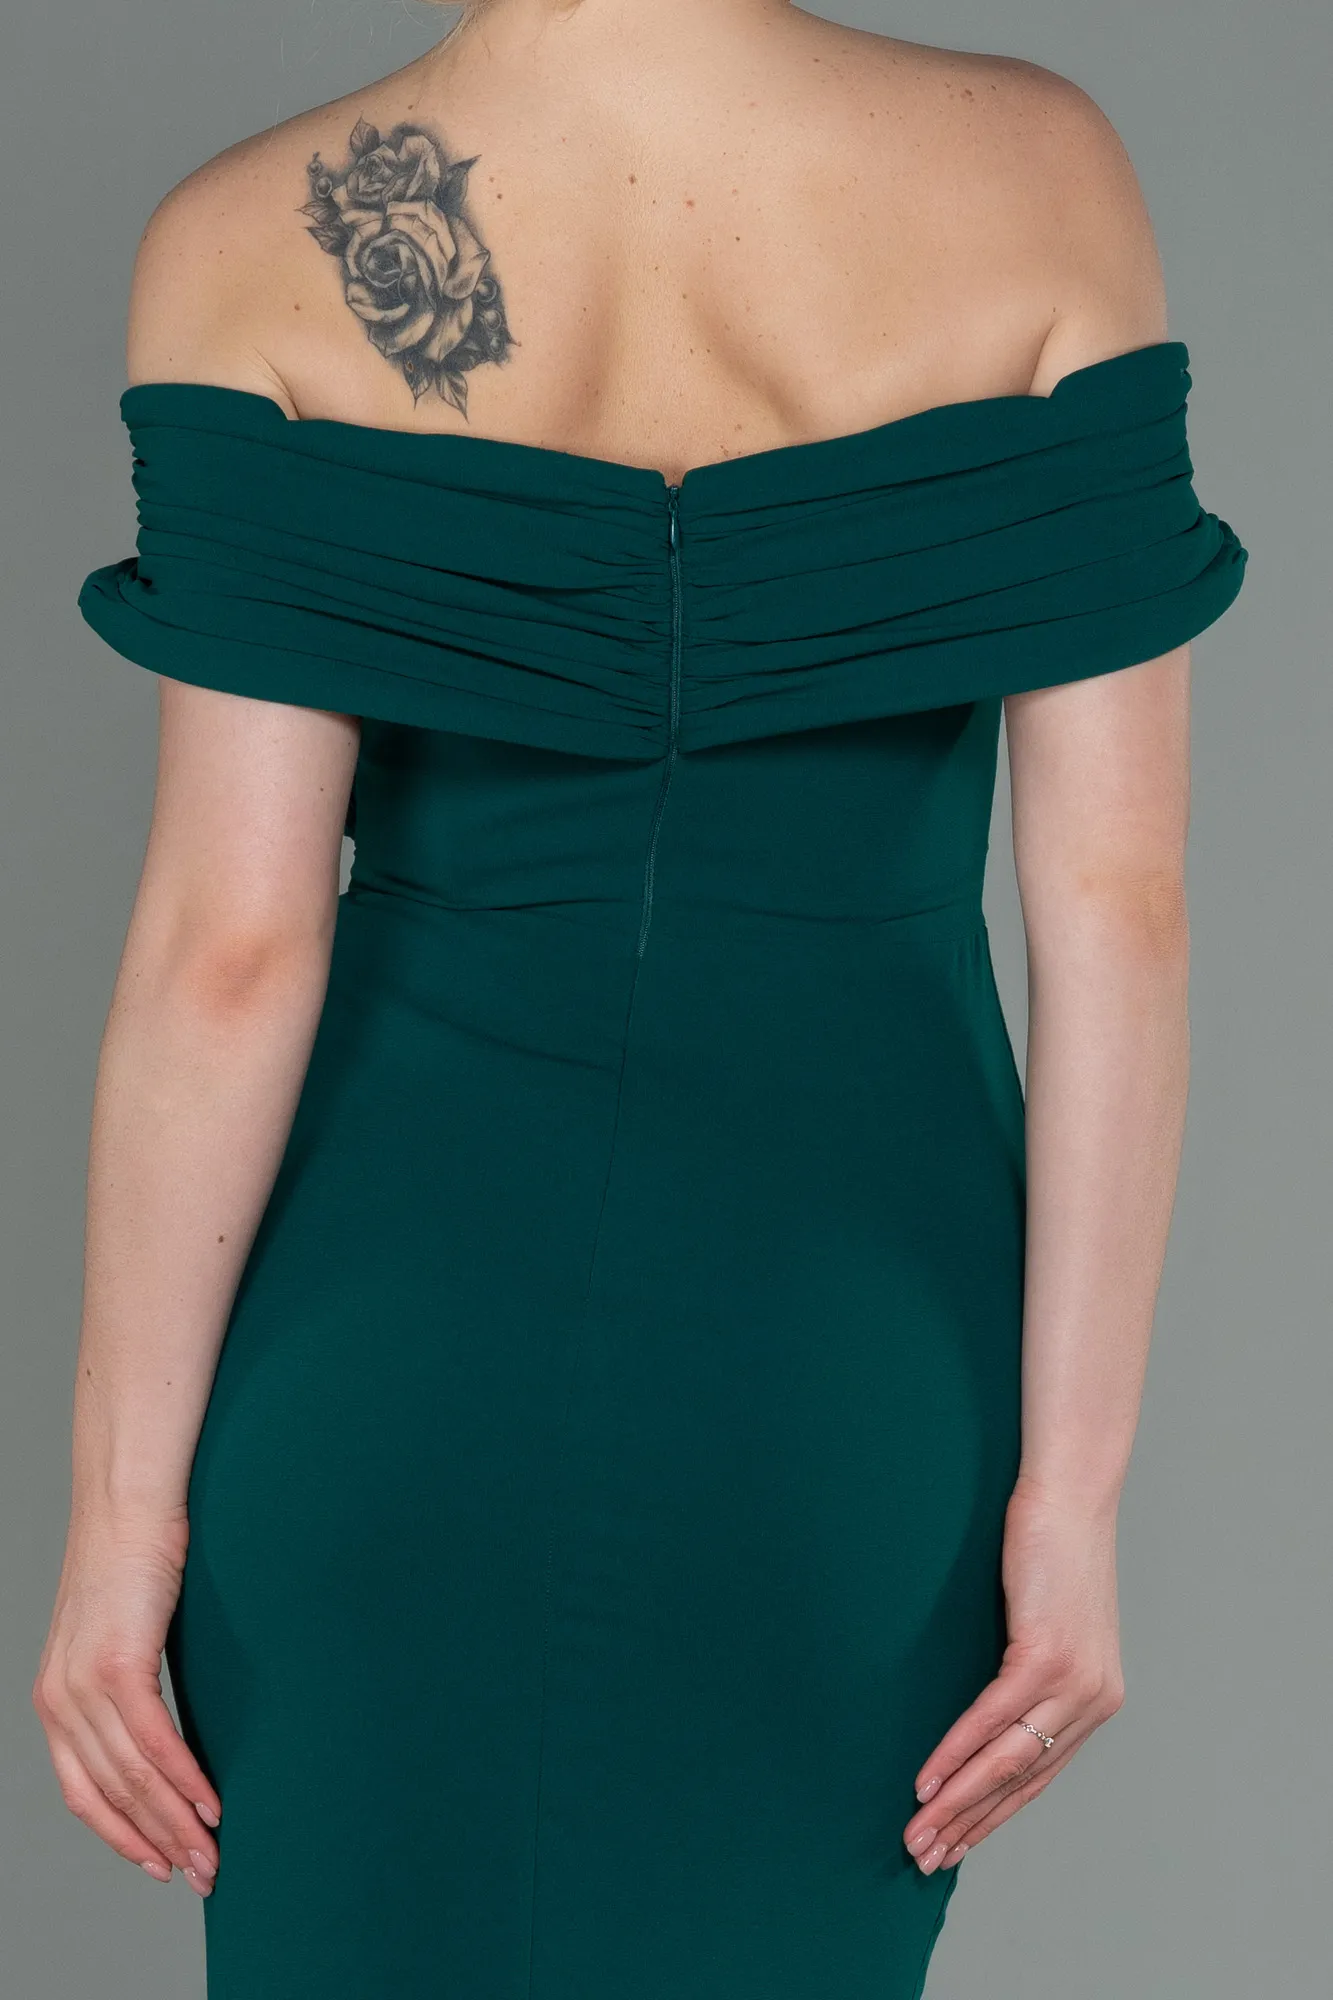 Emerald Green-Long Evening Dress ABU3156